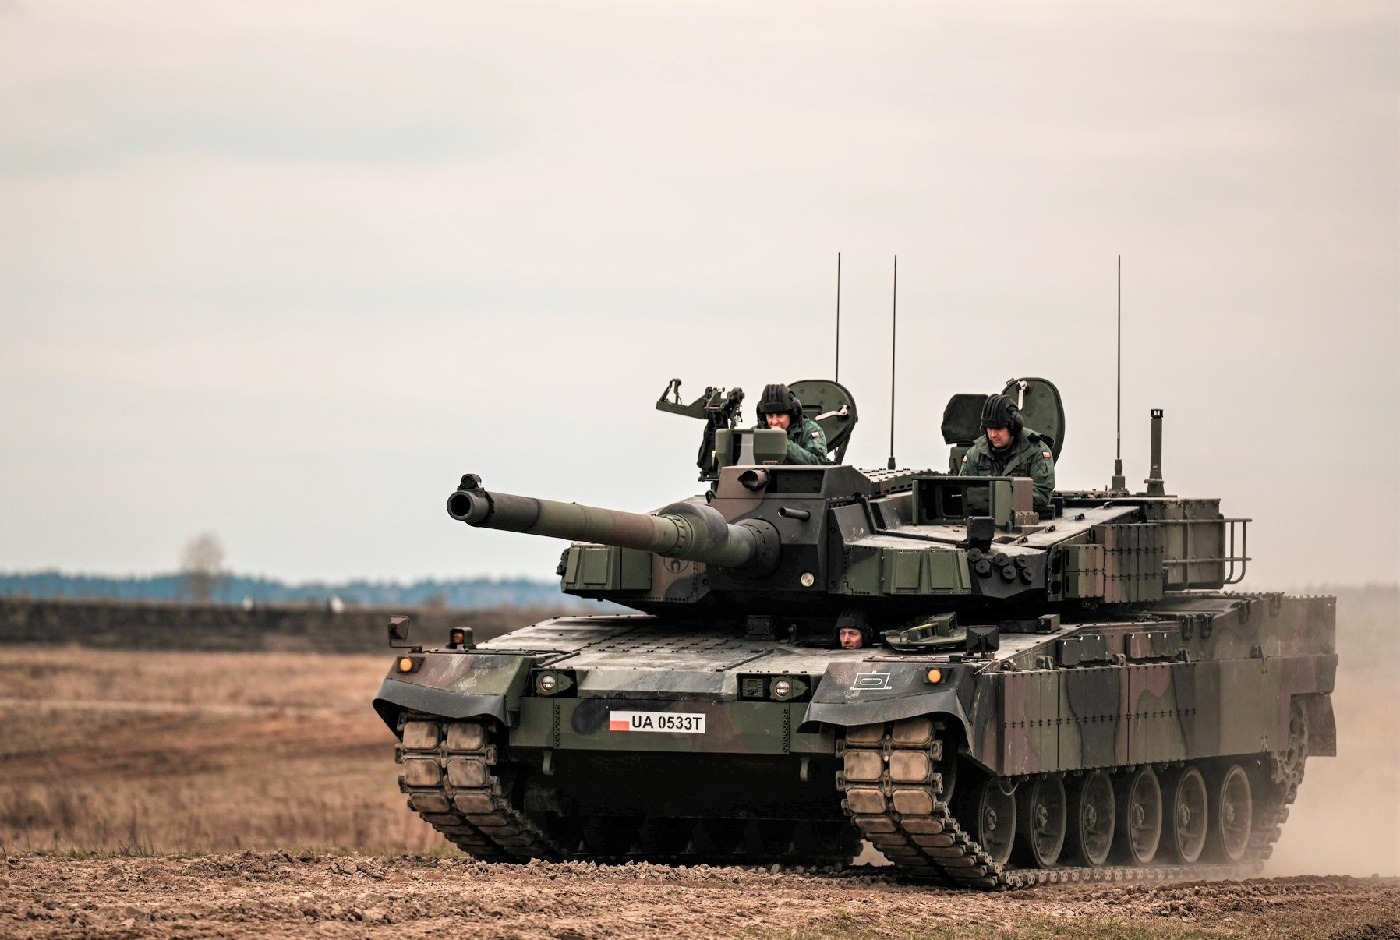 ۱۰ تانکی که با نوآوری های خود میدان نبرد را بازتعریف کردند؛ از Renault FT تا AbramsX (+عکس)